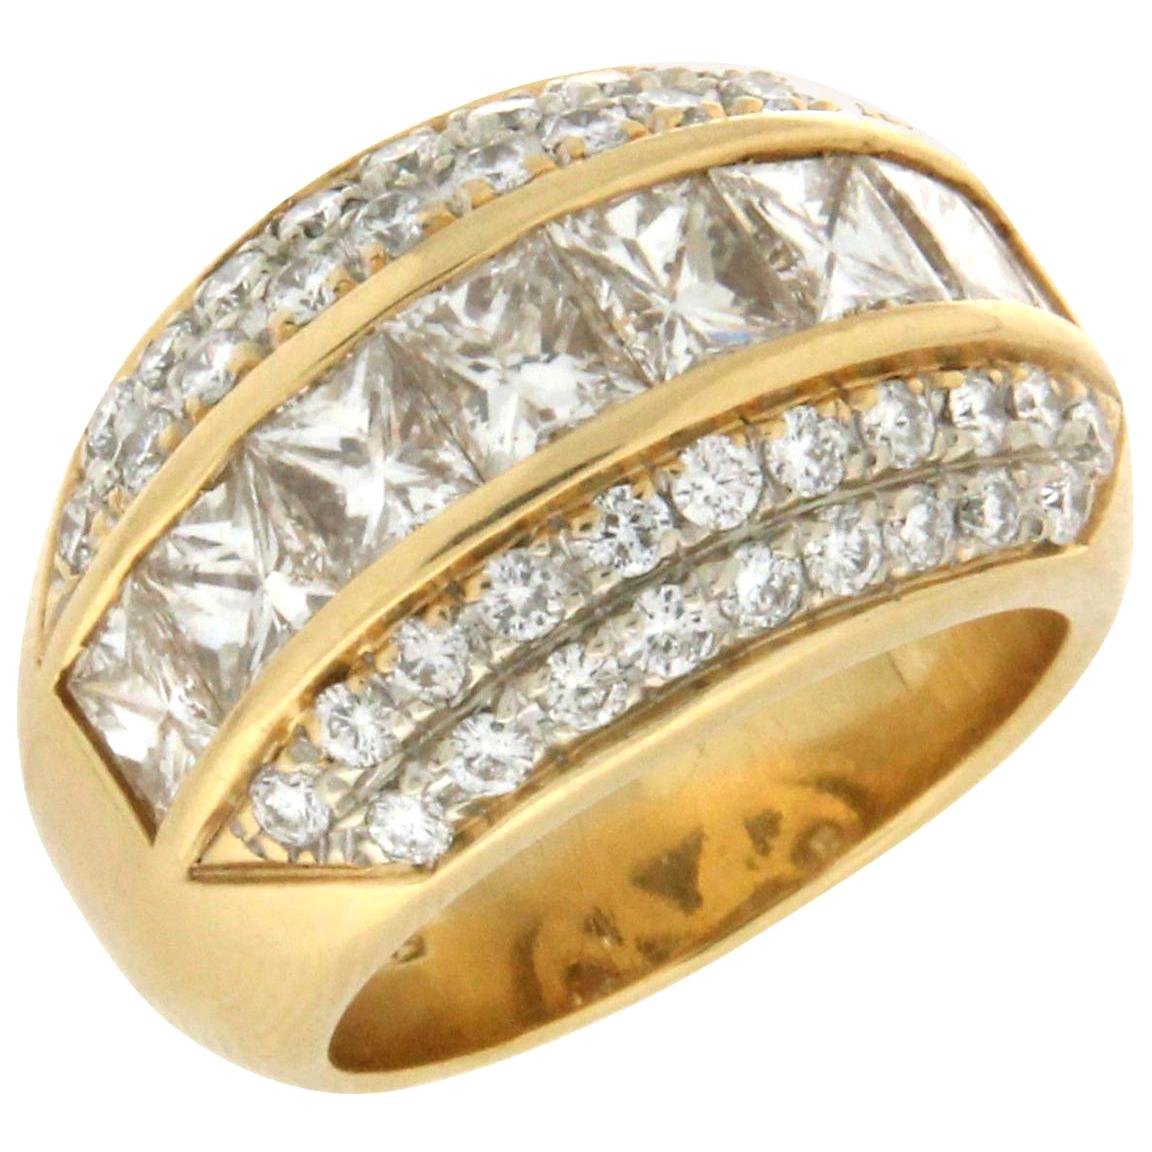 Bague jonc artisanale en or jaune 18 carats avec diamants taille princesse